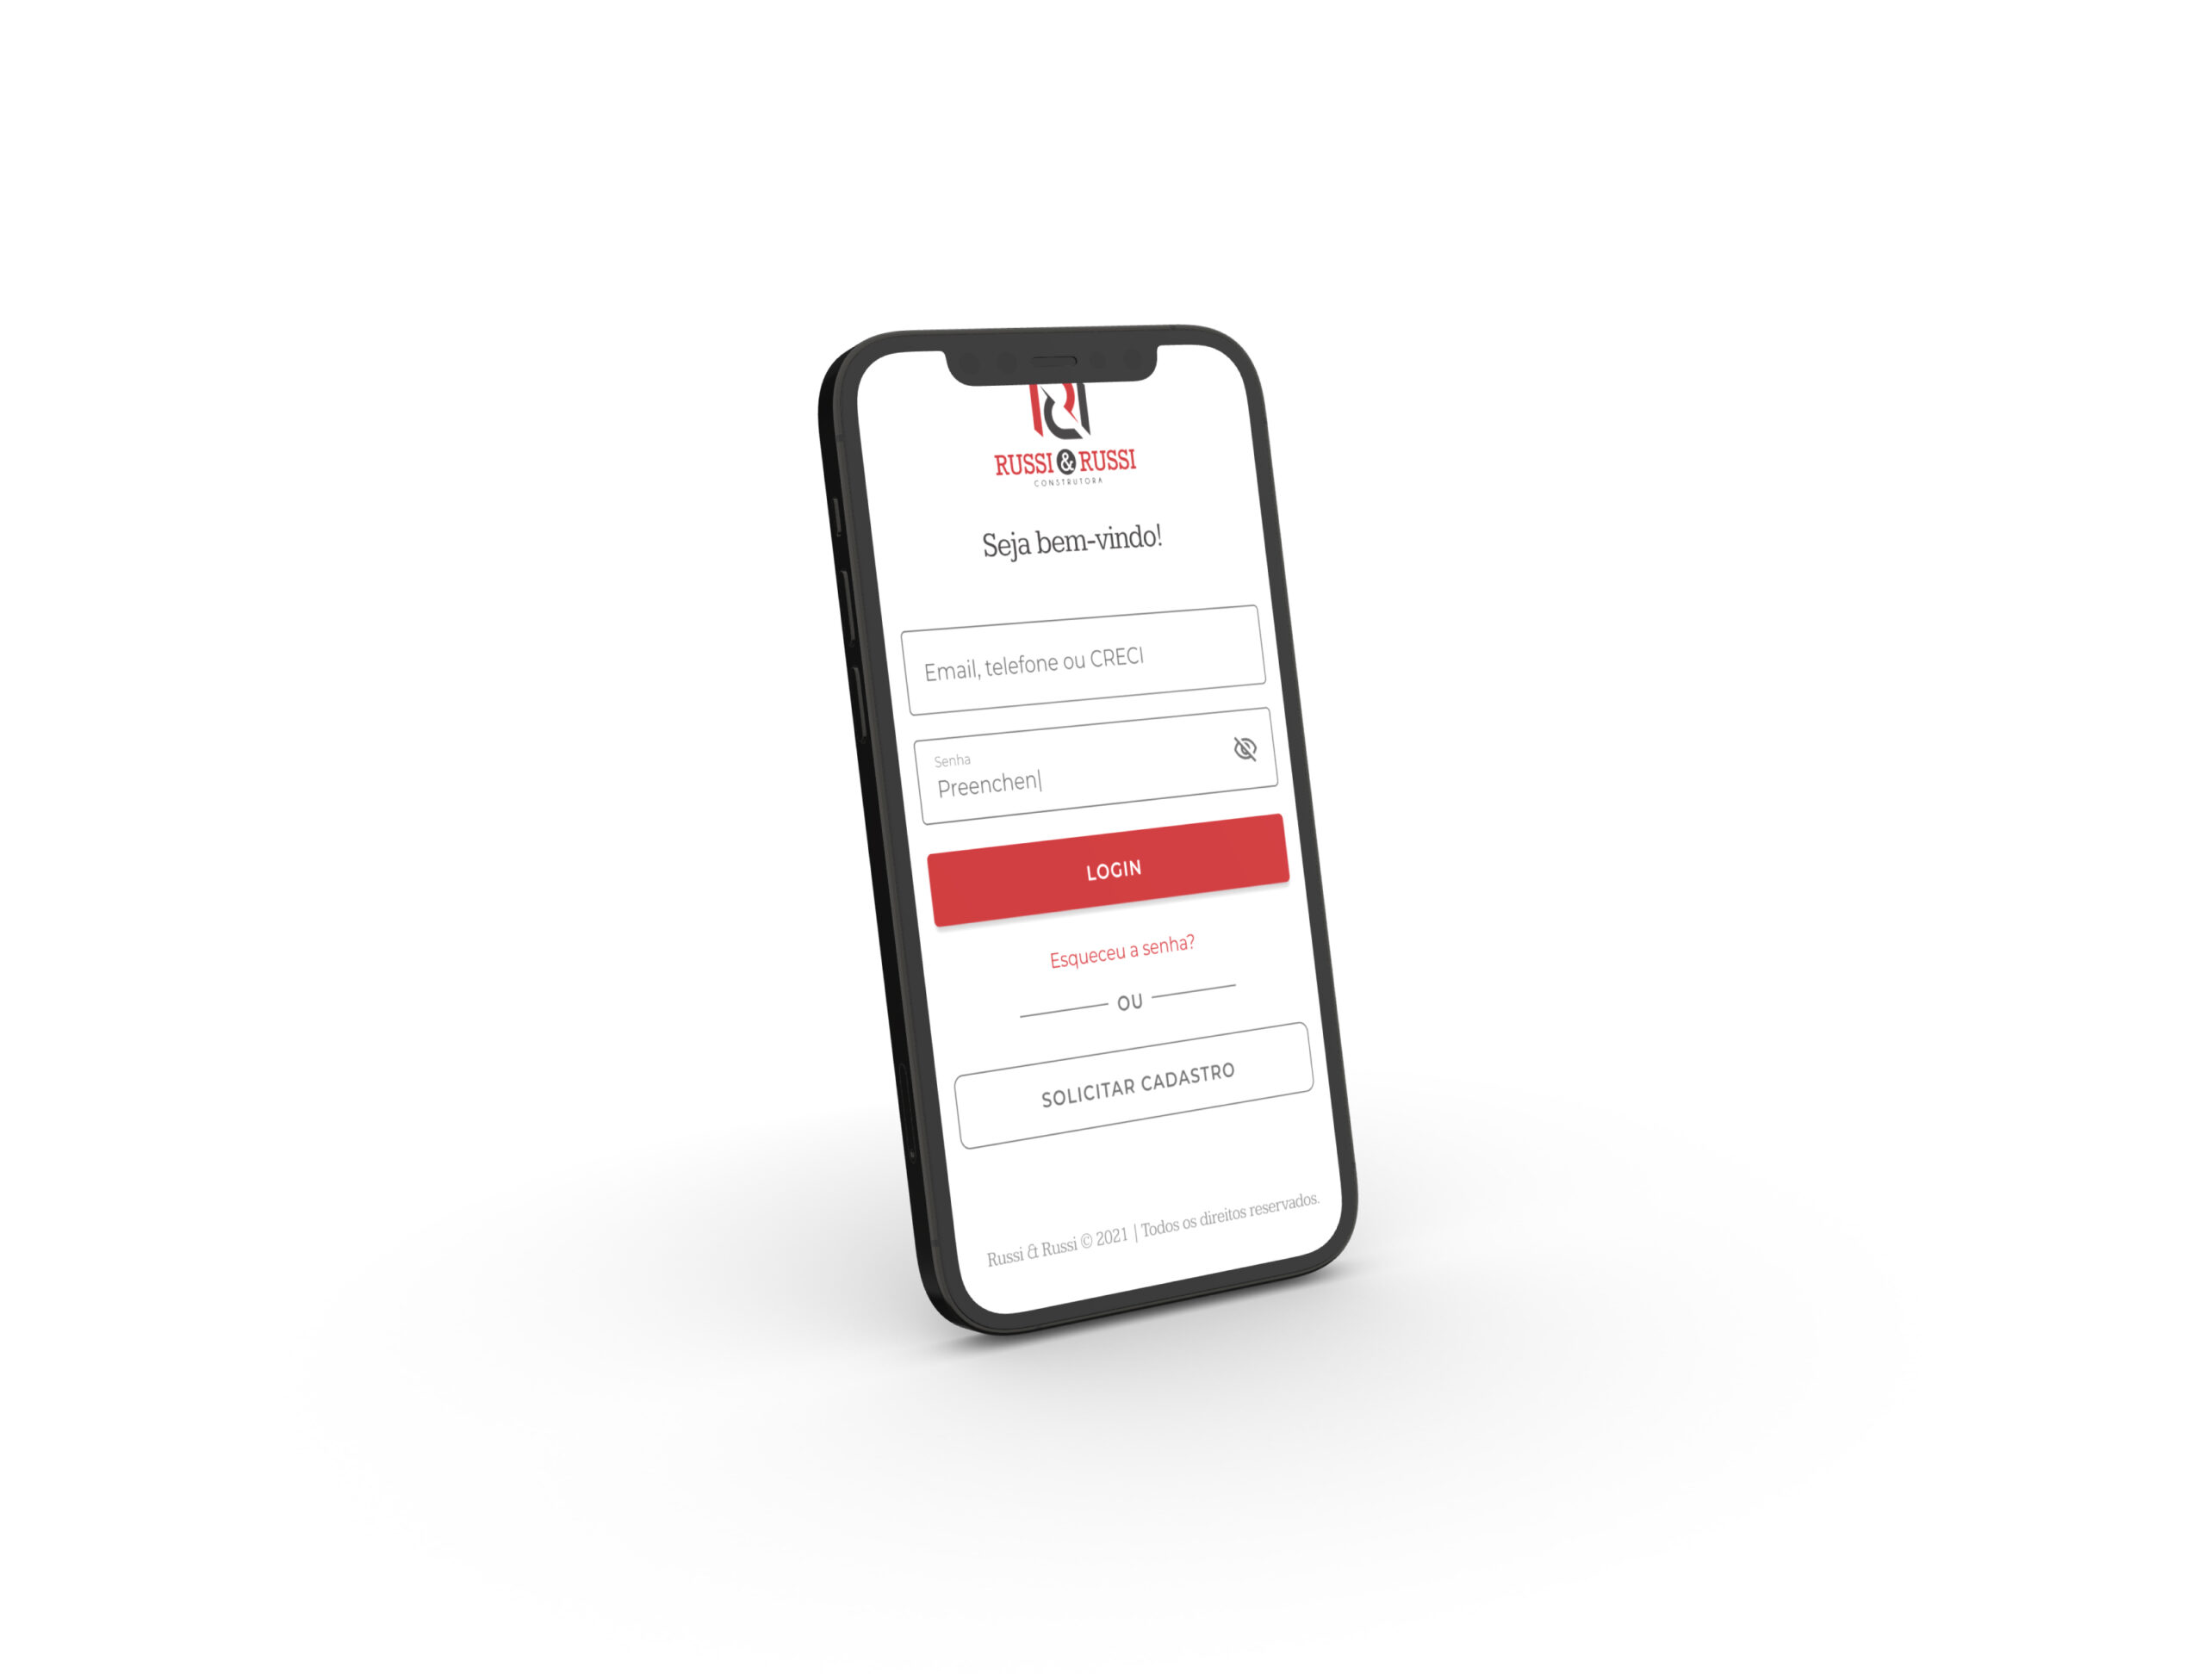 Smartphone exibindo tela de login em espanhol em plataforma web, contendo campos de e-mail e senha, com botão vermelho de login e opções de recuperação de senha e cadastro de novos usuários.